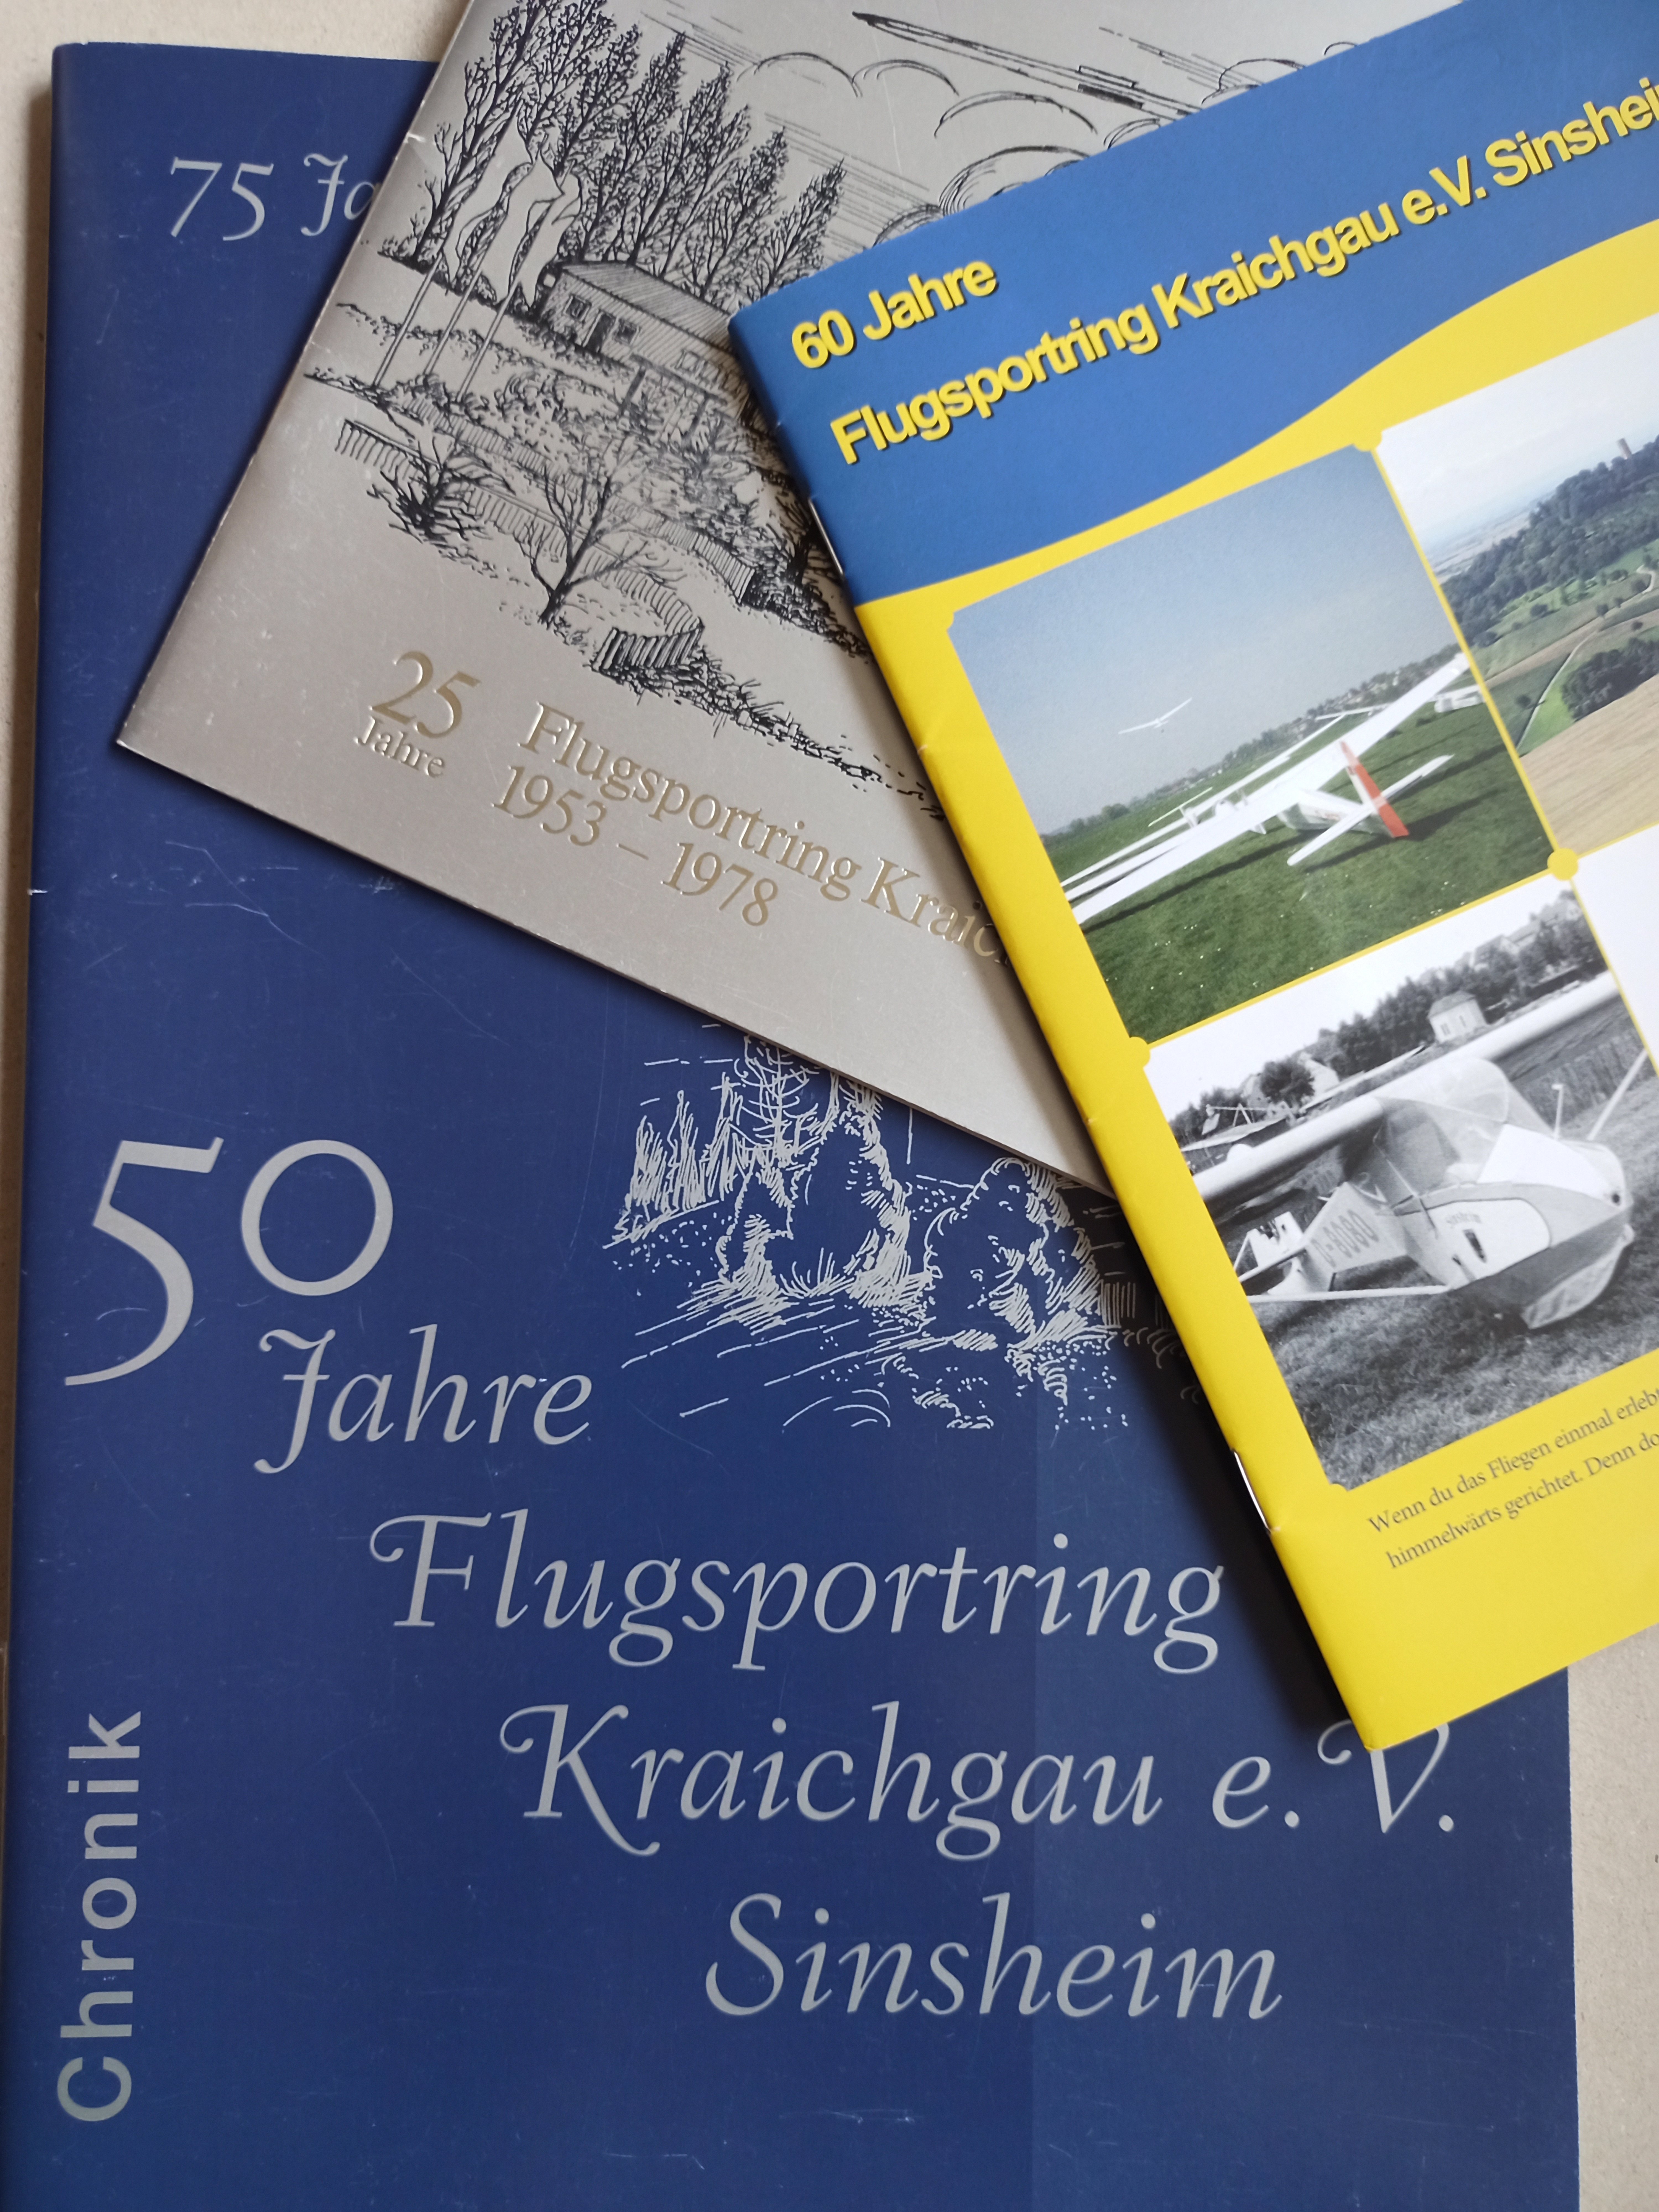 Sinsheim-Kraichgau 25 + 50 + 60 Jahre (Deutsches Segelflugmuseum mit Modellflug CC BY-NC-SA)